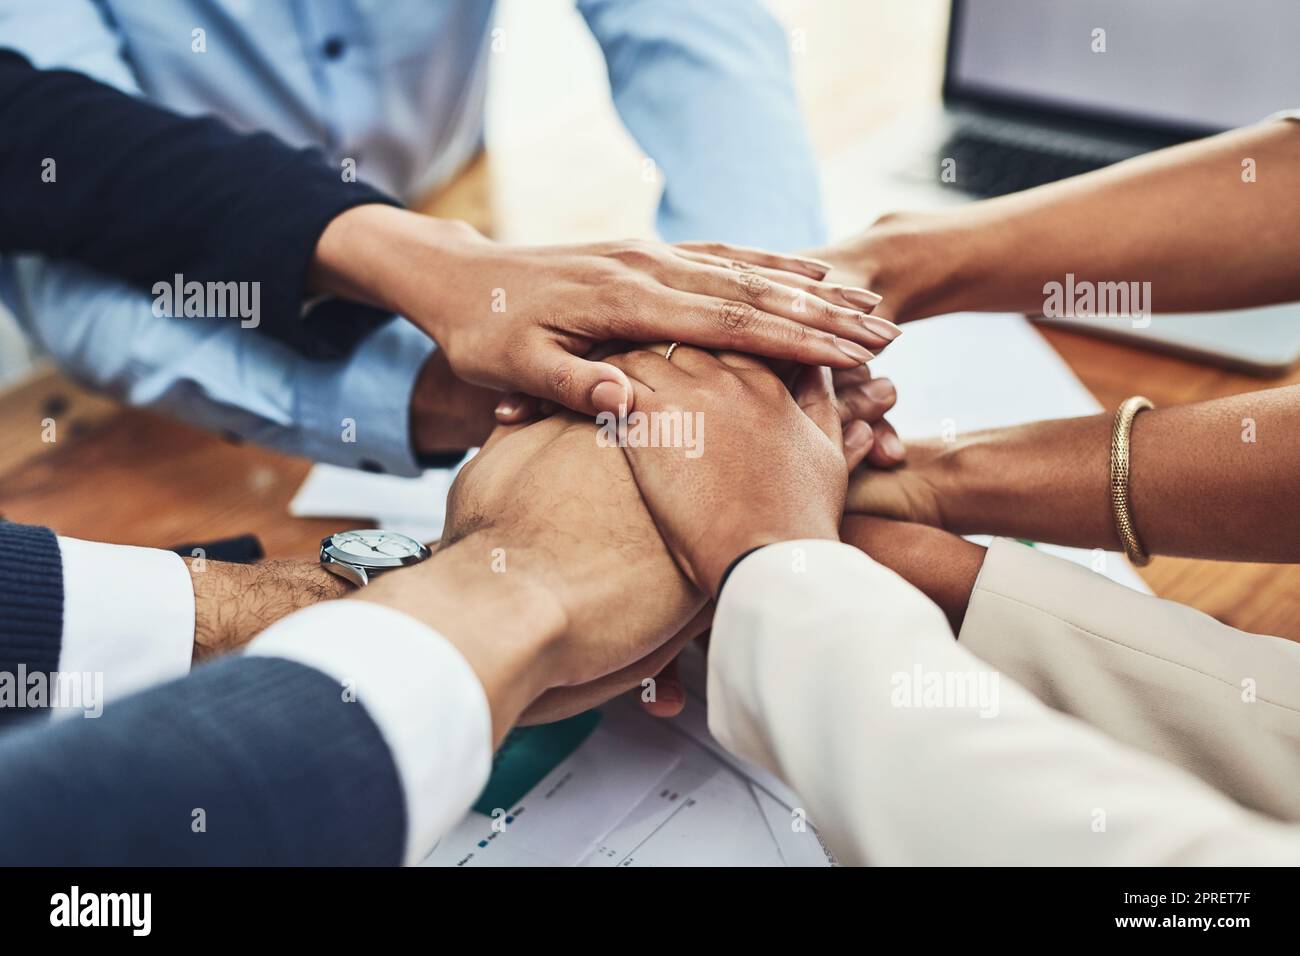 Vertrauen, Unterstützung und Einheit durch ein Team von Händen, das gemeinsam ein Unternehmen gründet. Community, Partner und Teamarbeit mit einer Gruppe von begeisterten, vielfältigen Fachleuten, die eine Idee, Vision oder ein Ziel für ein Startup haben Stockfoto